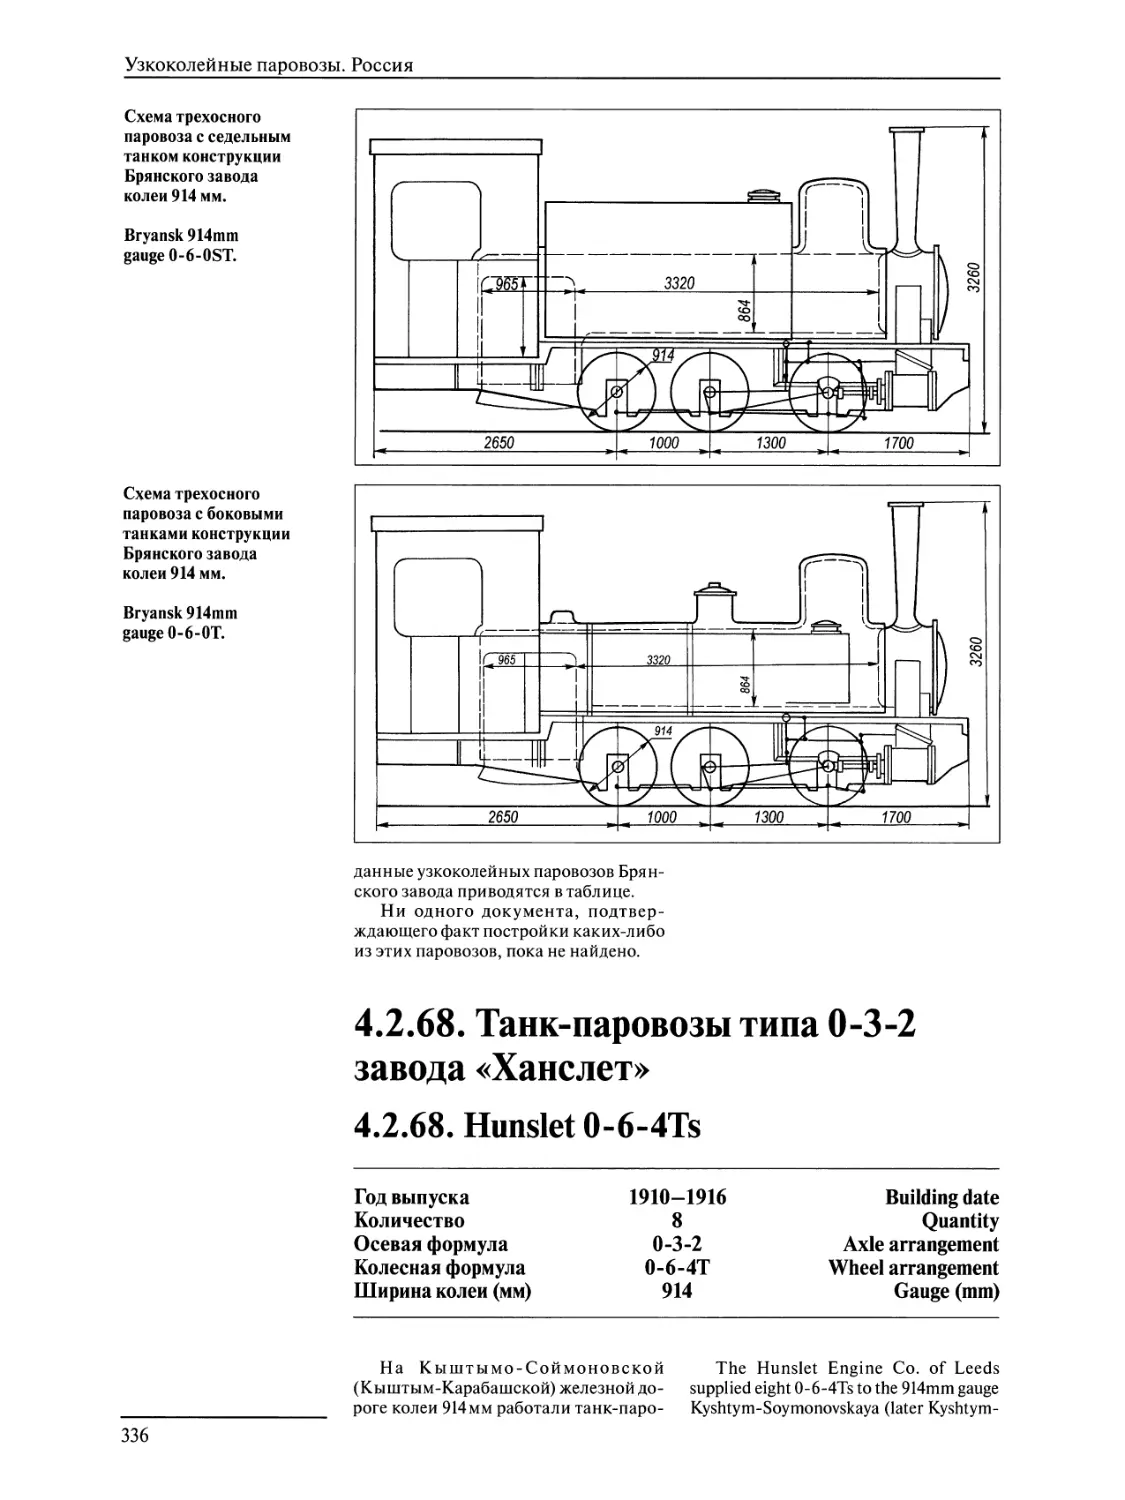 4.2.68. Танк-паровозы типа 0-3-2 завода «Ханслет»